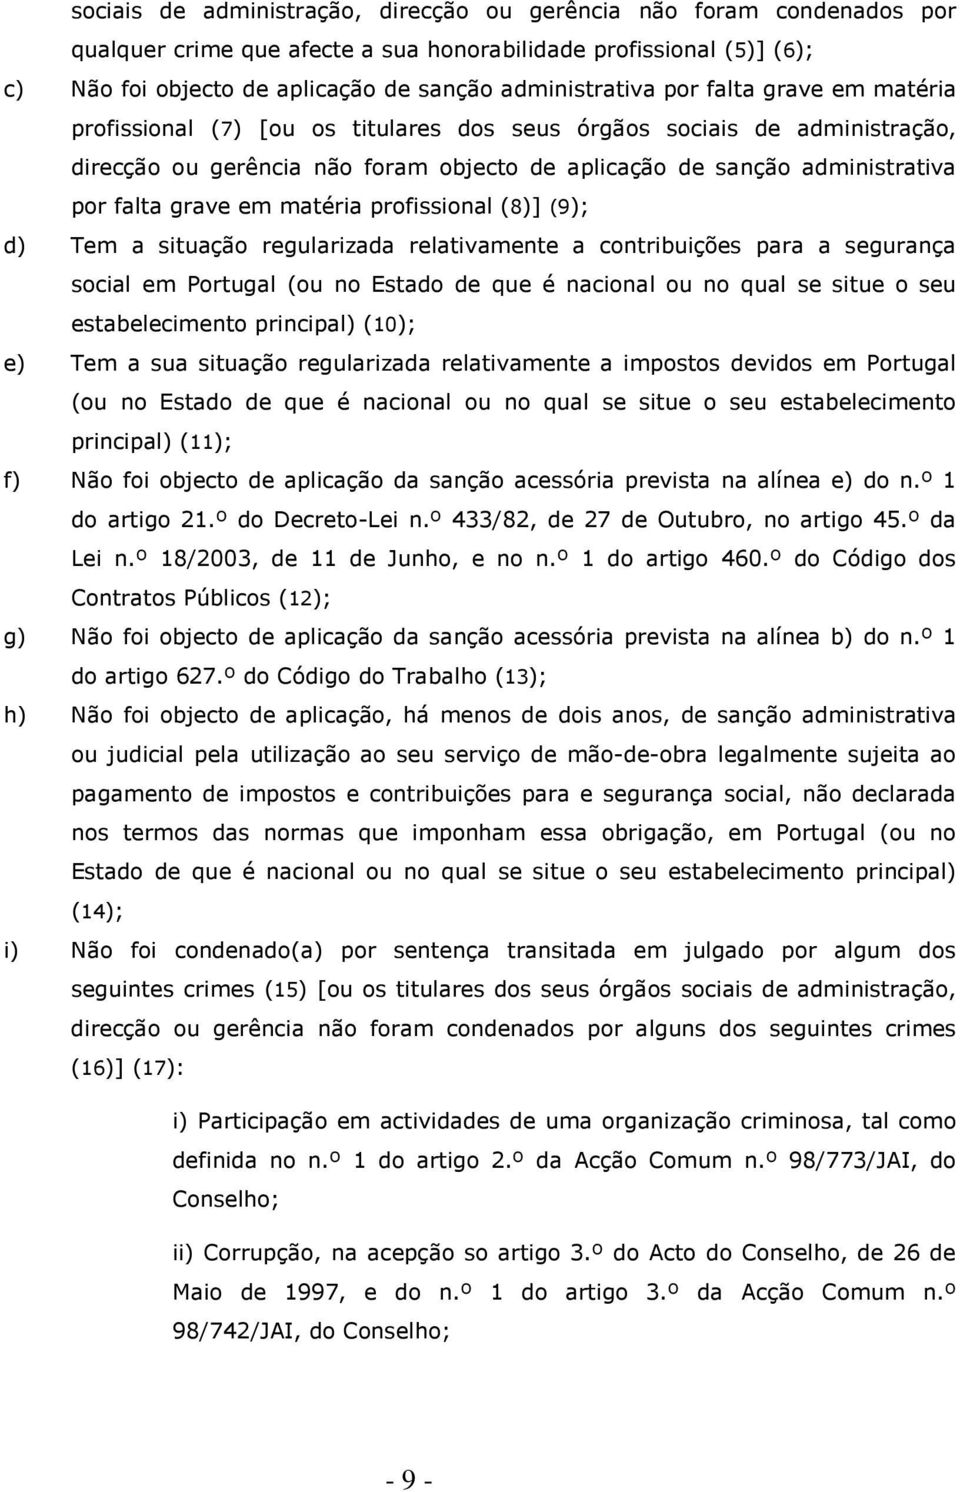 matéria profissional (8)] (9); d) Tem a situação regularizada relativamente a contribuições para a segurança social em Portugal (ou no Estado de que é nacional ou no qual se situe o seu